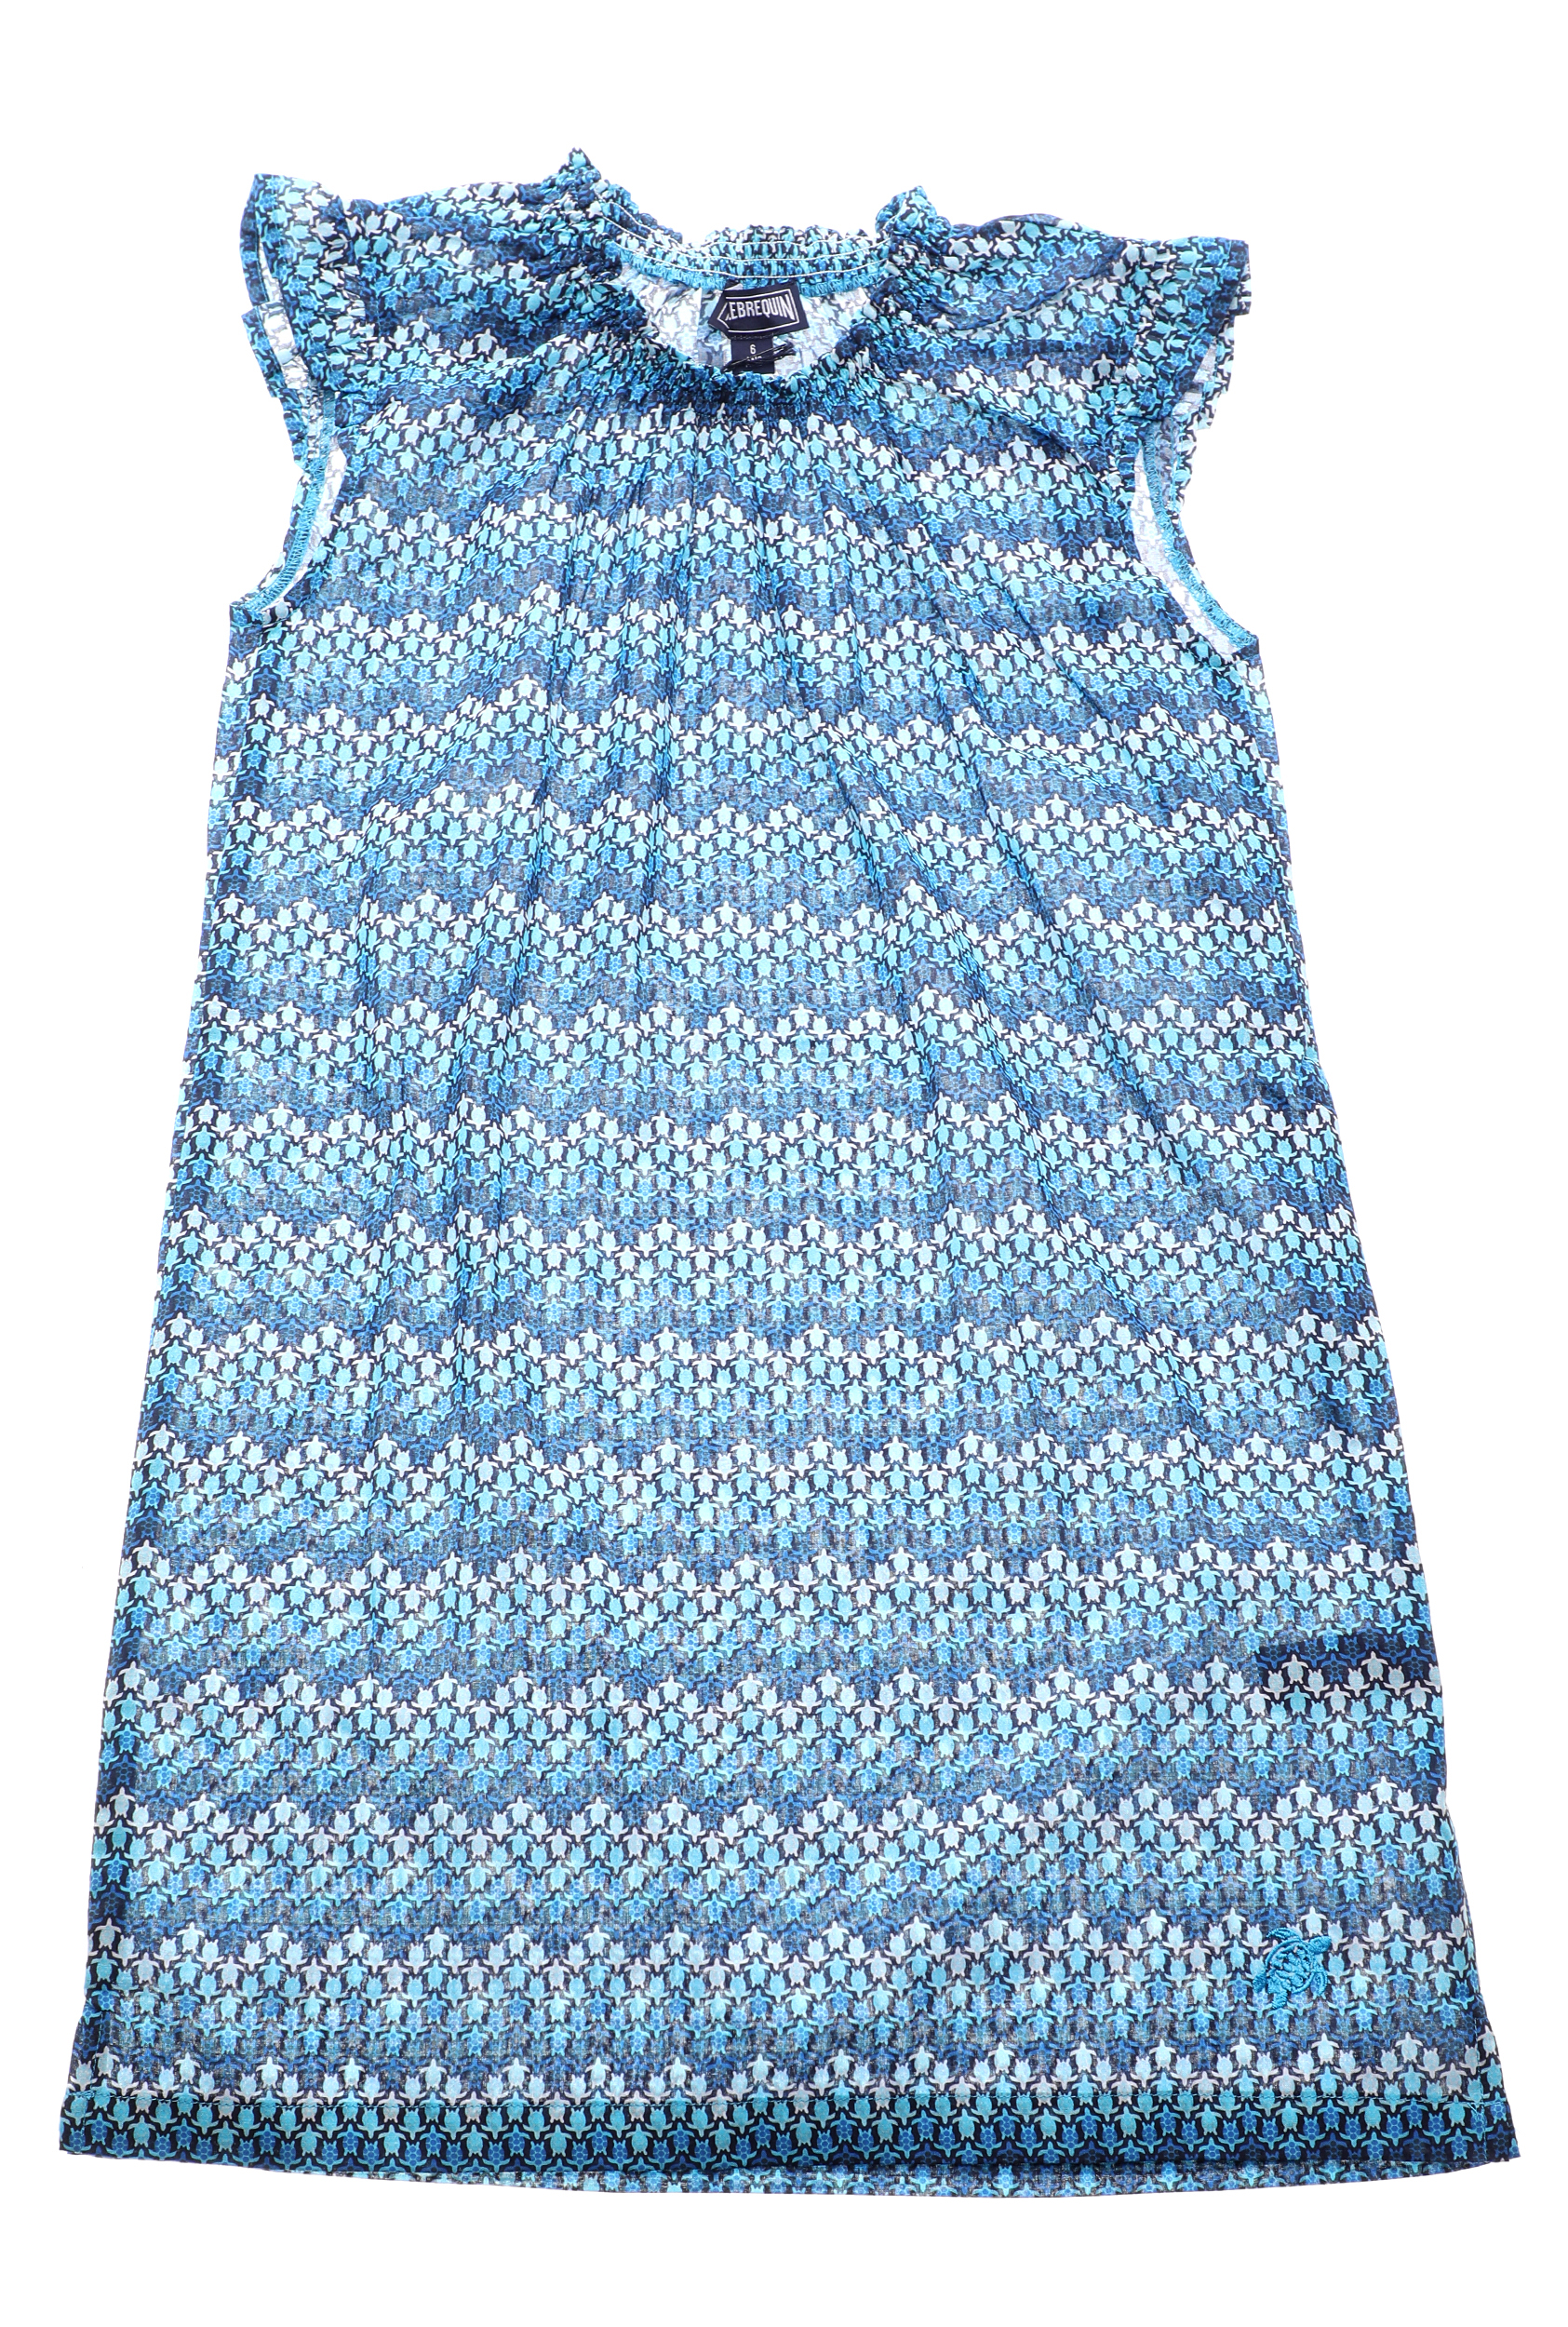 Παιδικά/Girls/Ρούχα/Φορέματα VILEBREQUIN - Παιδικό φόρεμα VILEBREQUIN GAPPY μπλε